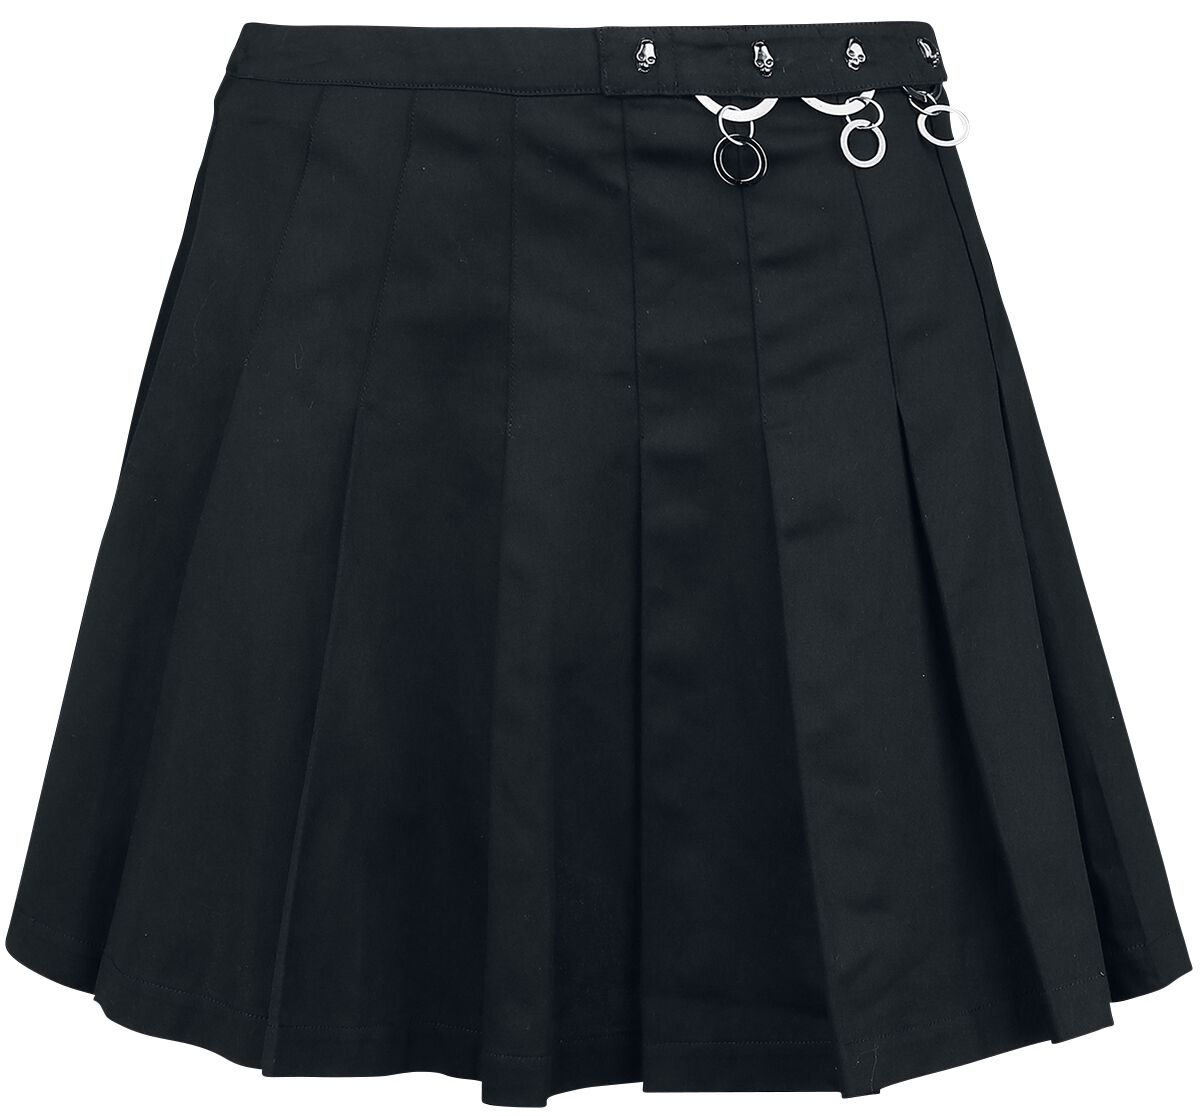 Banned Alternative - Gothic Kurzer Rock - Pleated Ring Skirt - XS bis XL - für Damen - Größe XL - schwarz